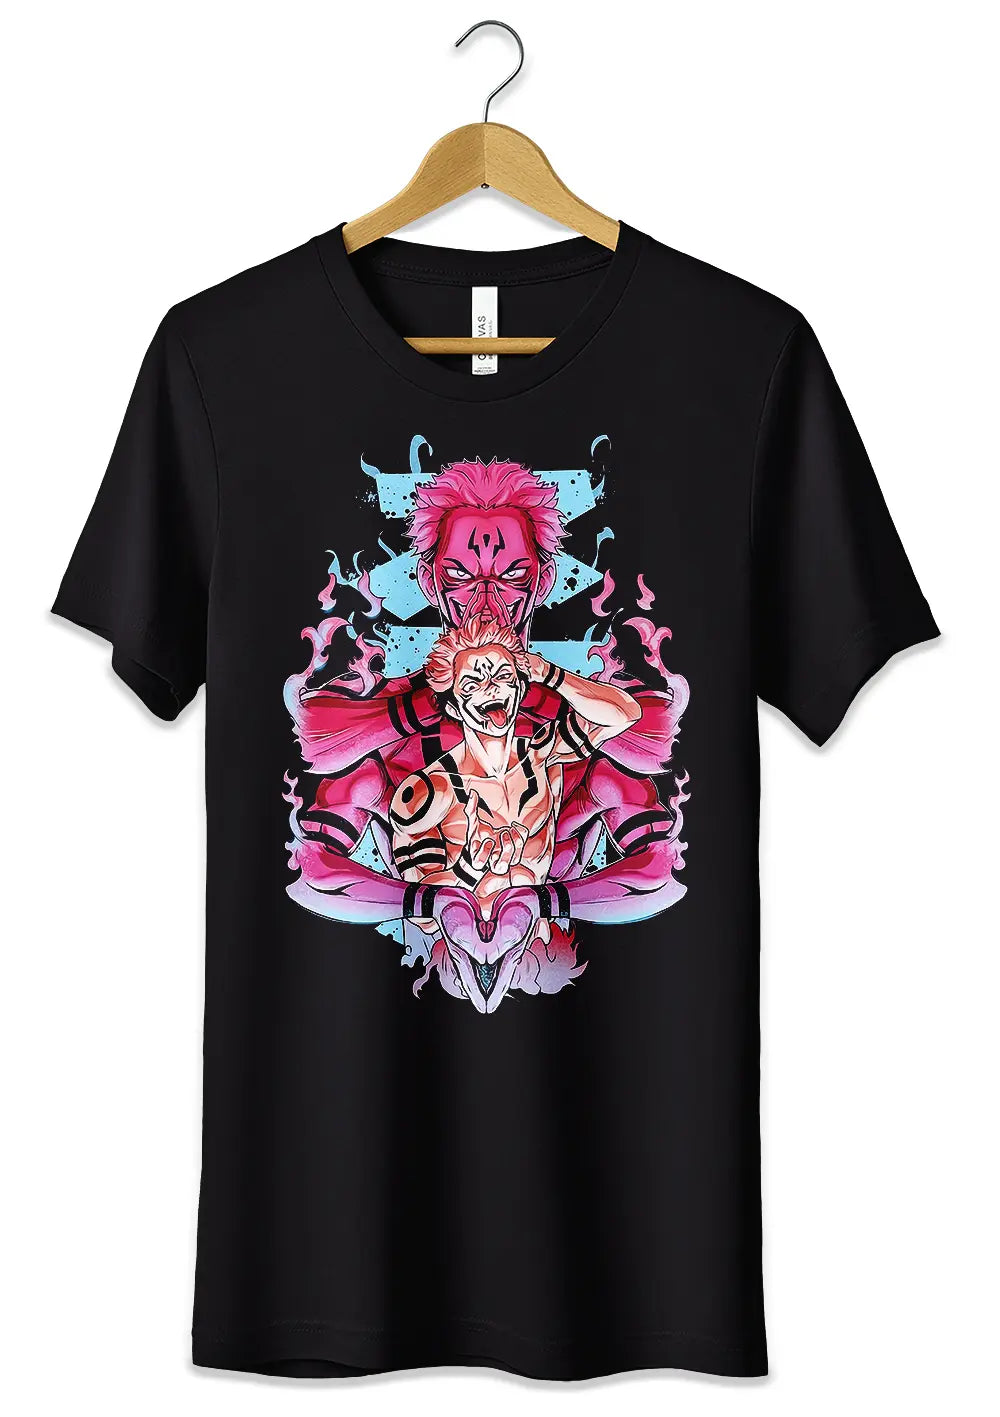 T-Shirt Maglietta Sukuna Jujutsu Kaisen Anime, T-Shirt, CmrDesignStore, T-Shirt Maglietta Sukuna Jujutsu Kaisen Anime